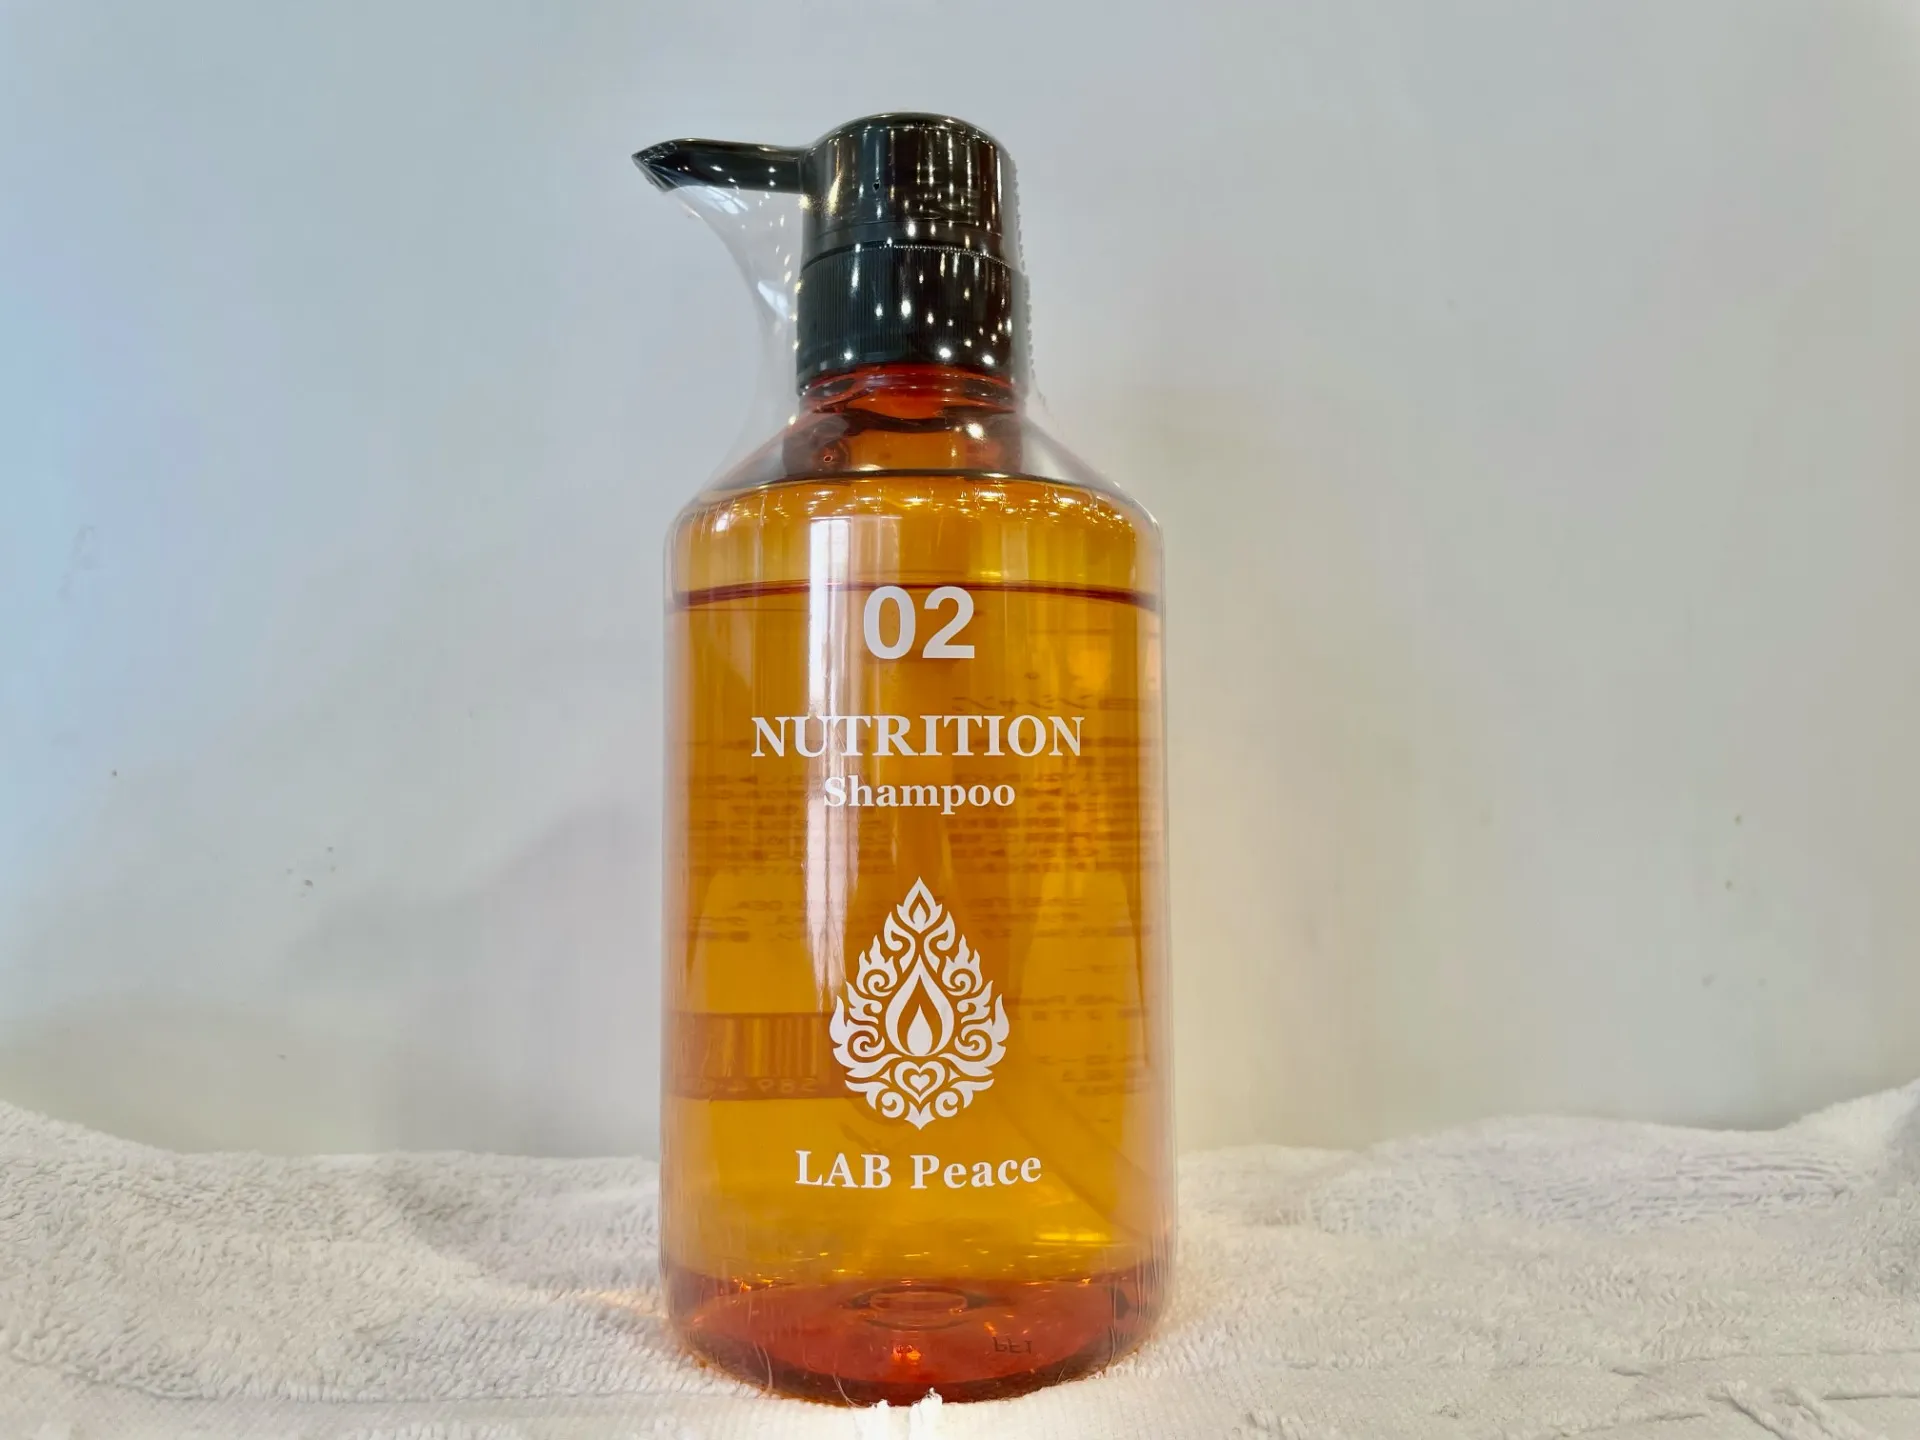 02.Nutrition Shampoo